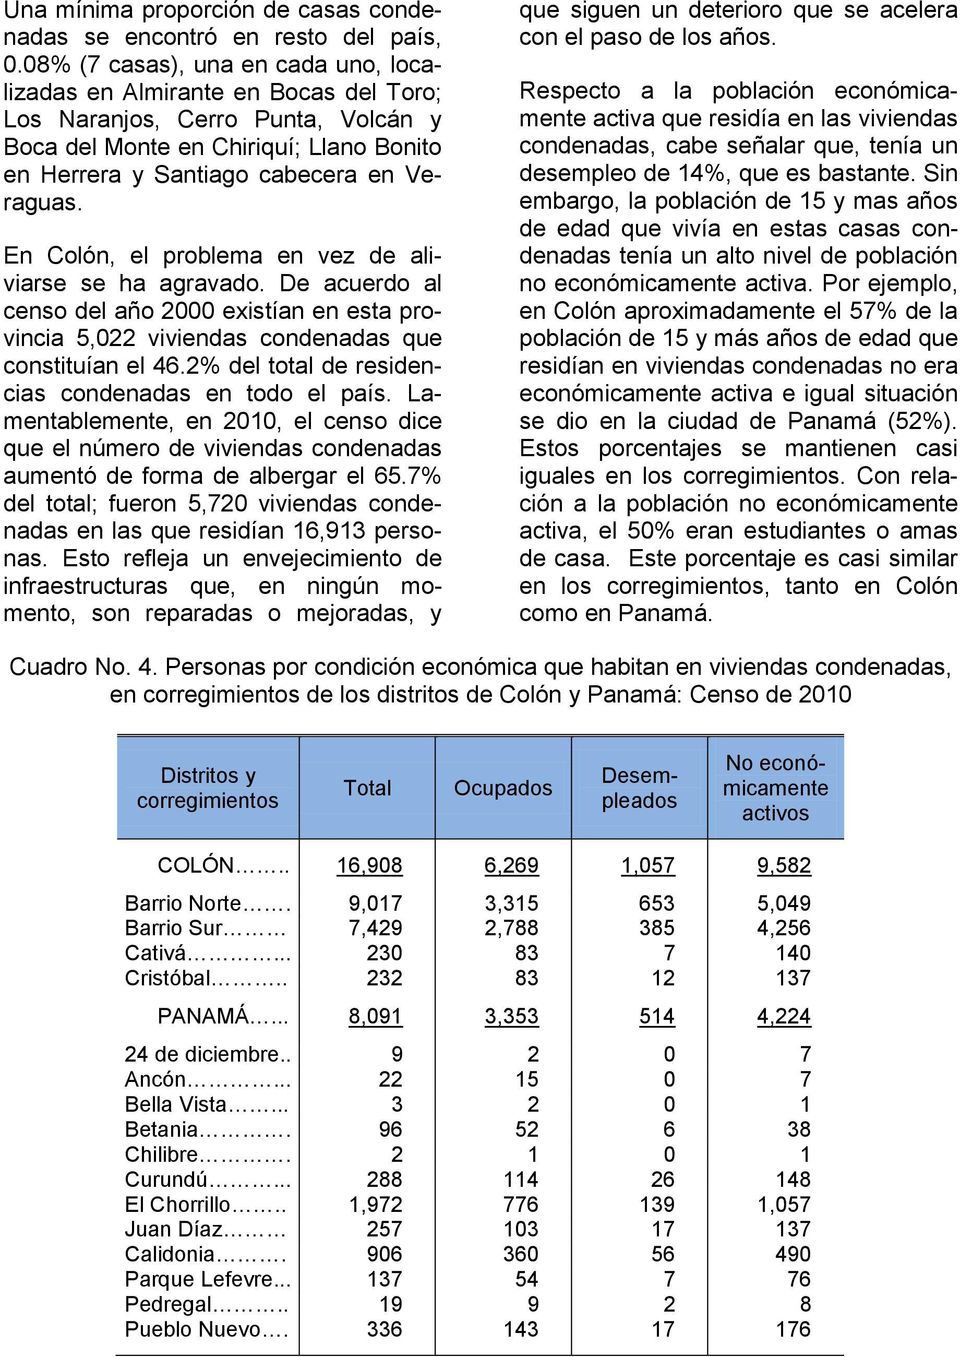 En Colón, el problema en vez de aliviarse se ha agravado. De acuerdo al censo del año 2000 existían en esta provincia 5,022 viviendas condenadas que constituían el 46.